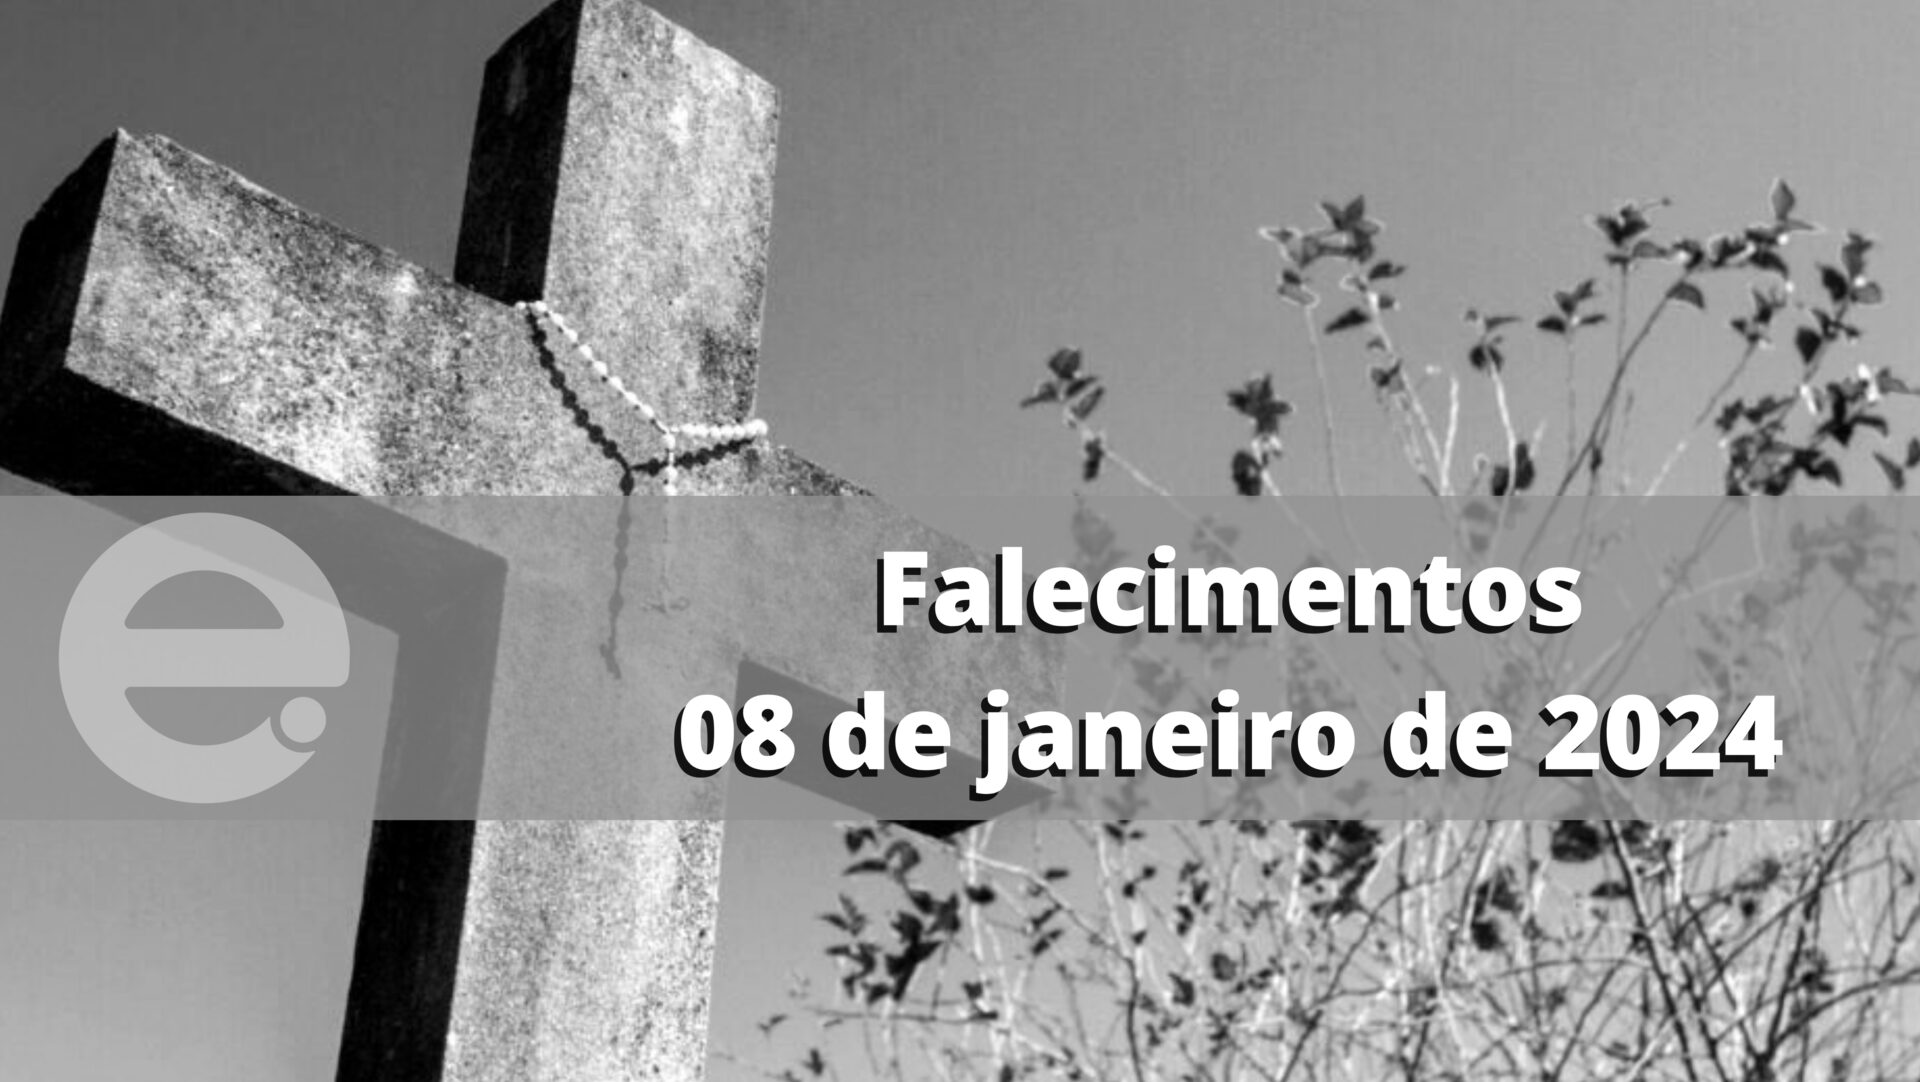 Confira os falecimentos desta segunda-feira, 08 de janeiro de 2024, em Limeira